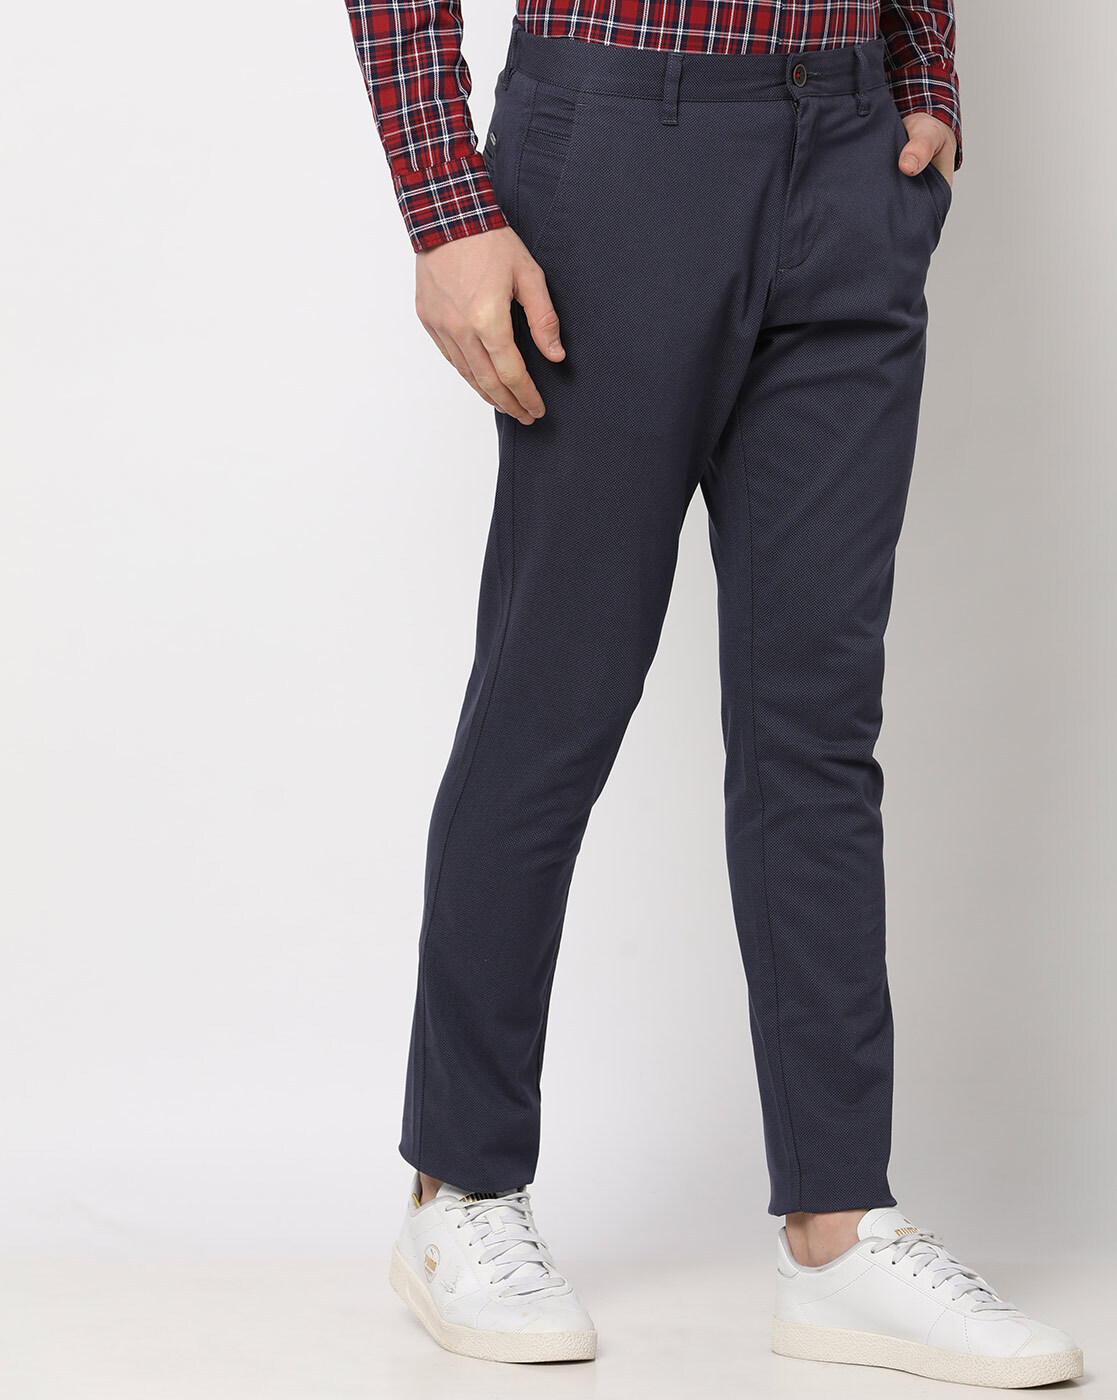 Barleycorn Tweed Trousers | Men's Country Clothing | Cordings US